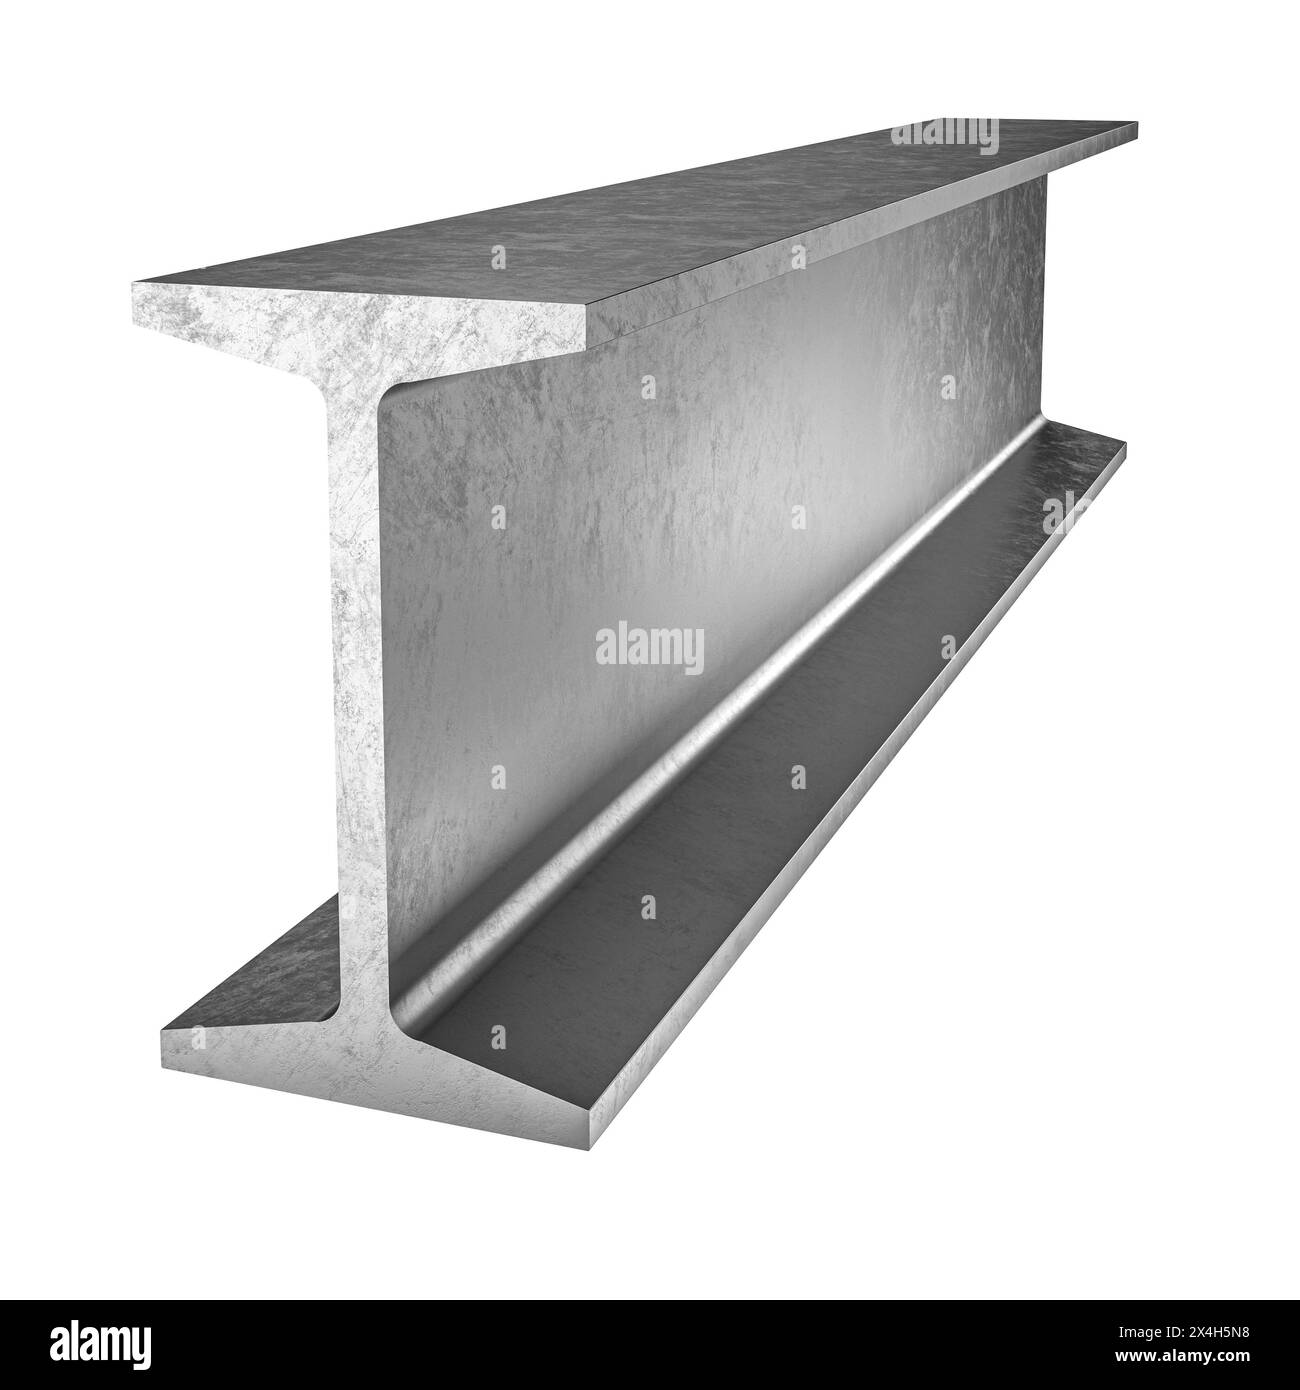 Illustrazione 3d isolata di una trave a i in acciaio, su sfondo bianco Foto Stock